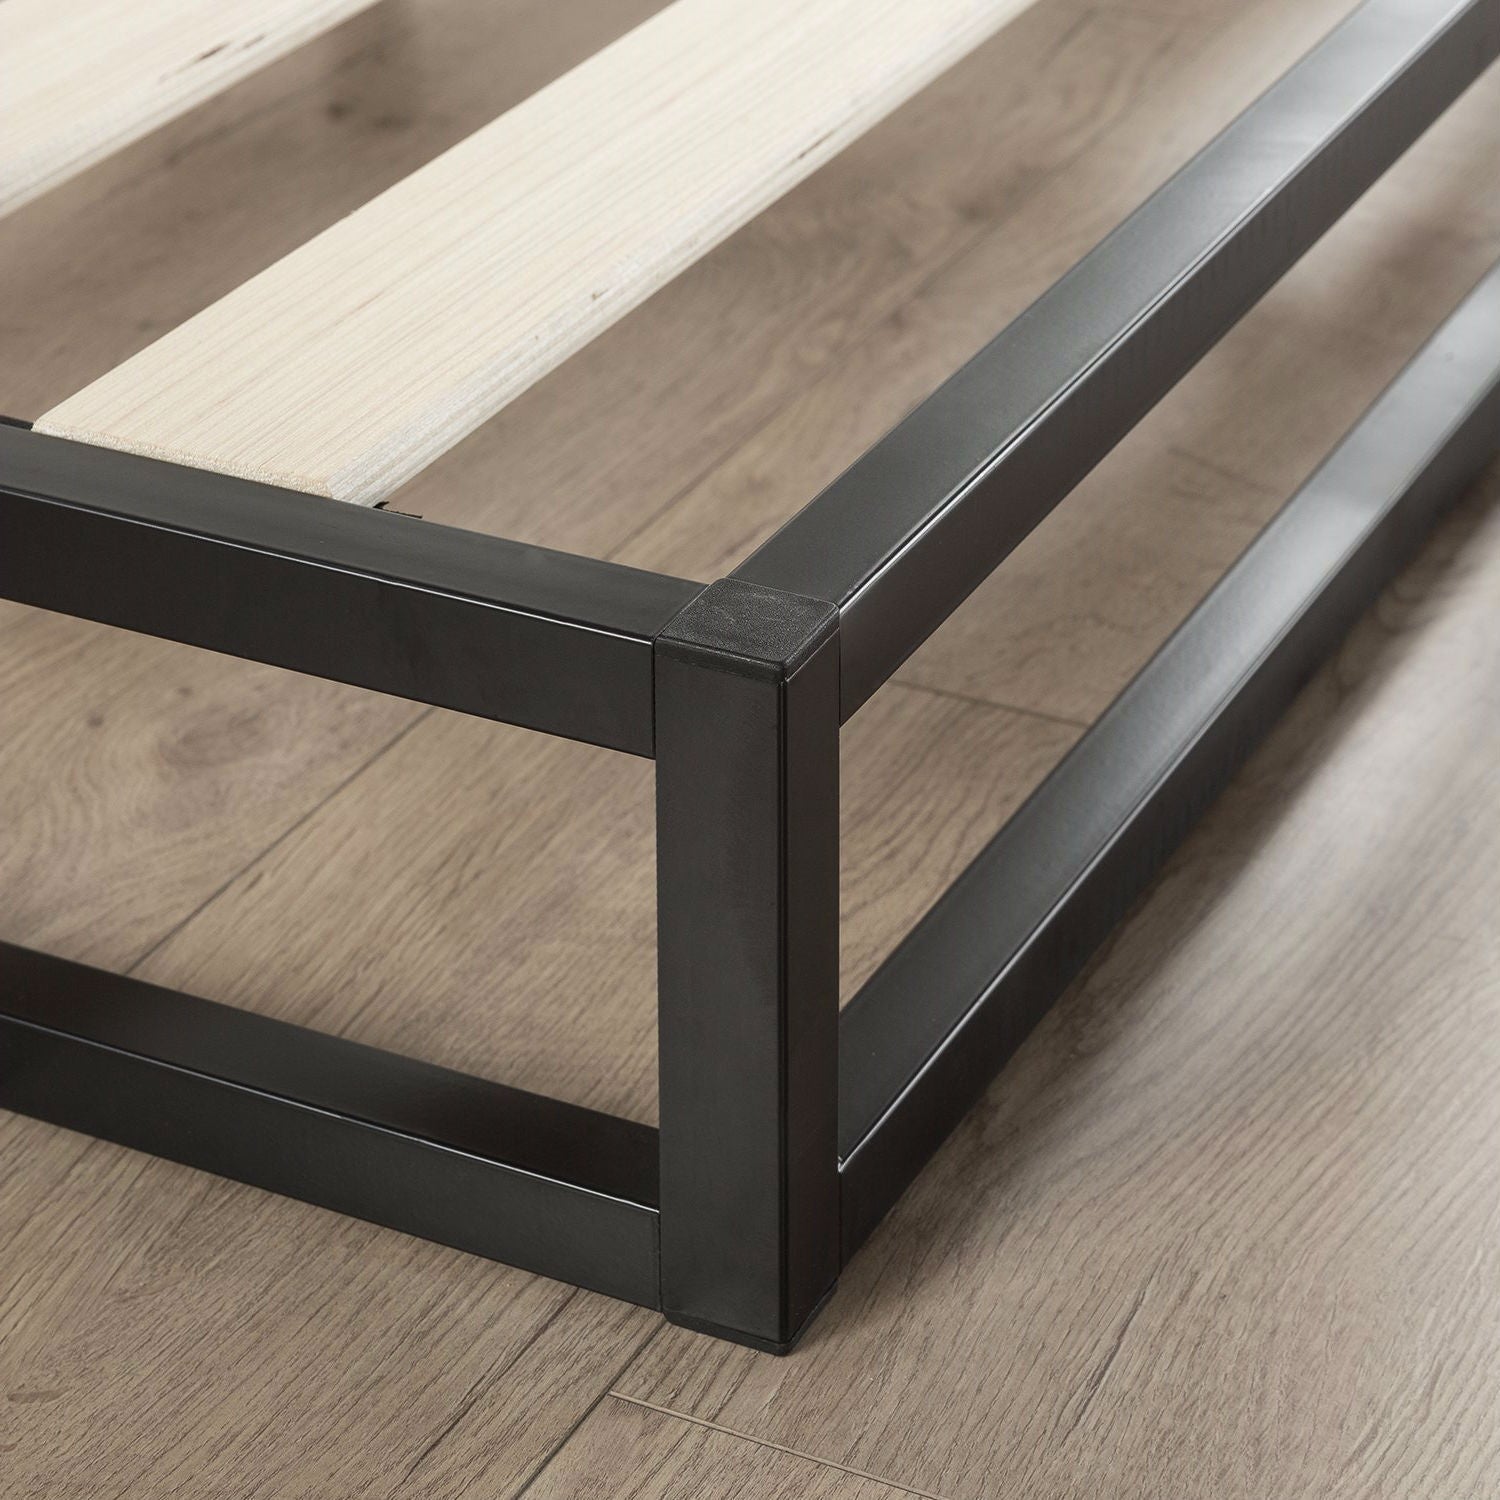 Bedroom > Bed Frames > Platform Beds - King 6-inch Low Profile Metal Platform Bed Frame With Wooden Support Slats